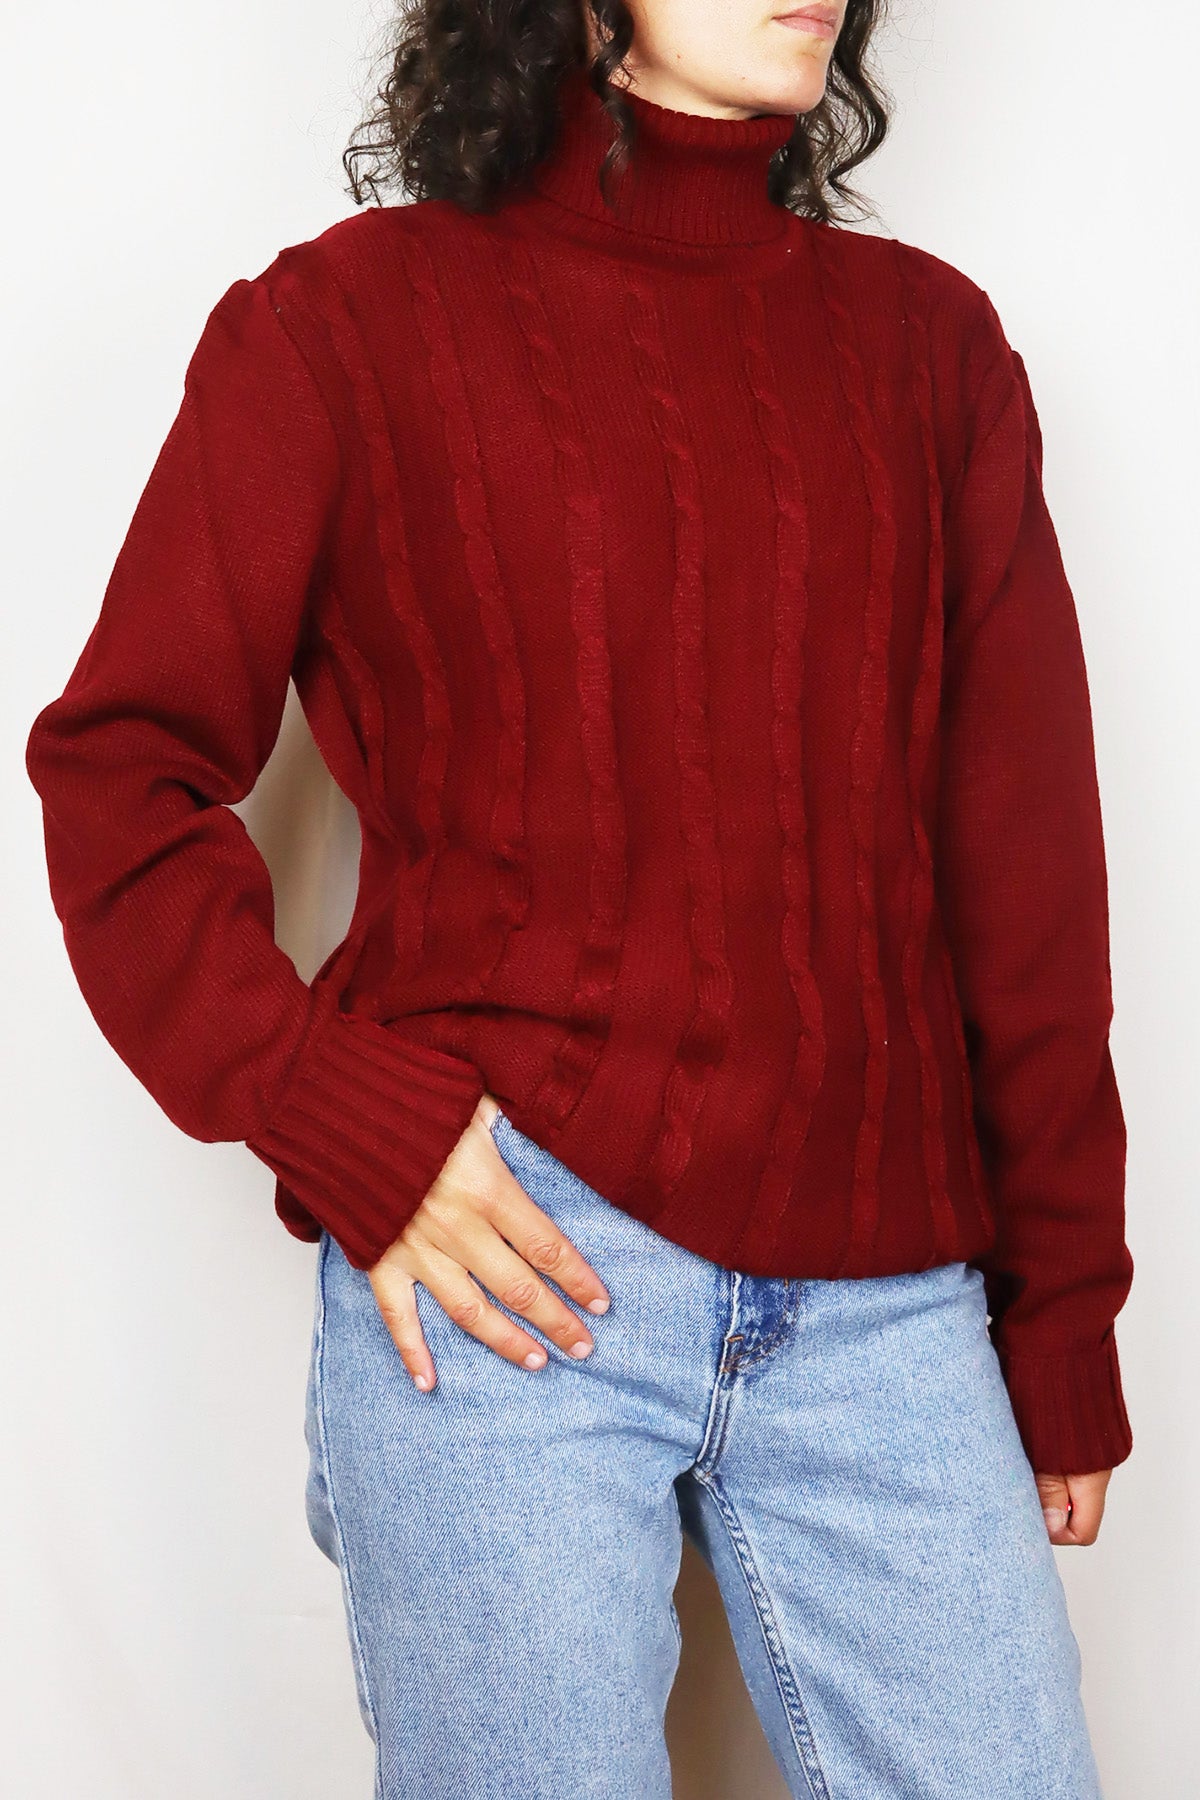 Vintage Pullover Basic Rollkragen Rot ( Gr. M )